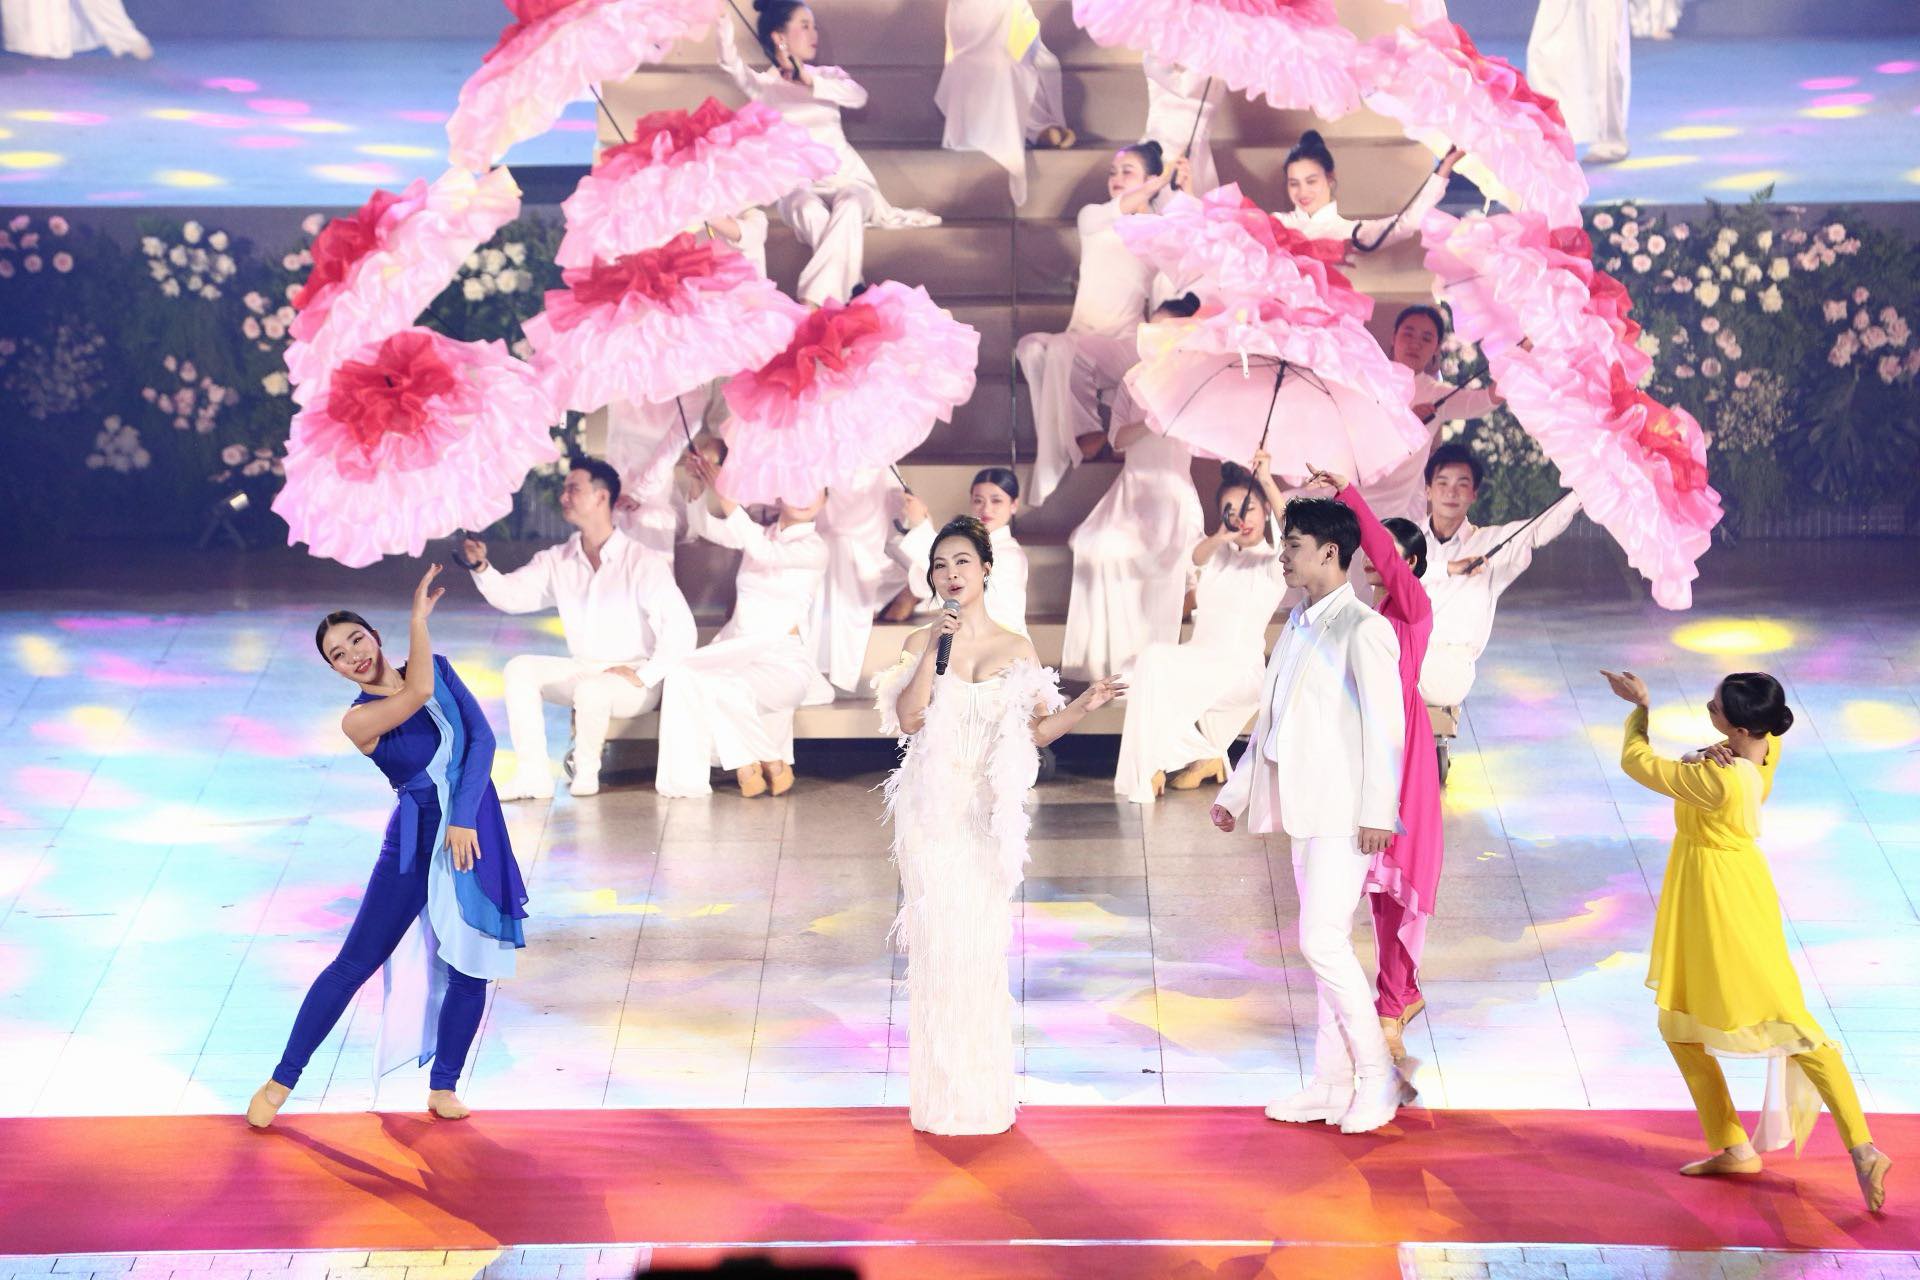 Trúc Nhân, Hà Nhi quẩy cực sung giữa 35 nghìn khán giả tại Đà Lạt - 6